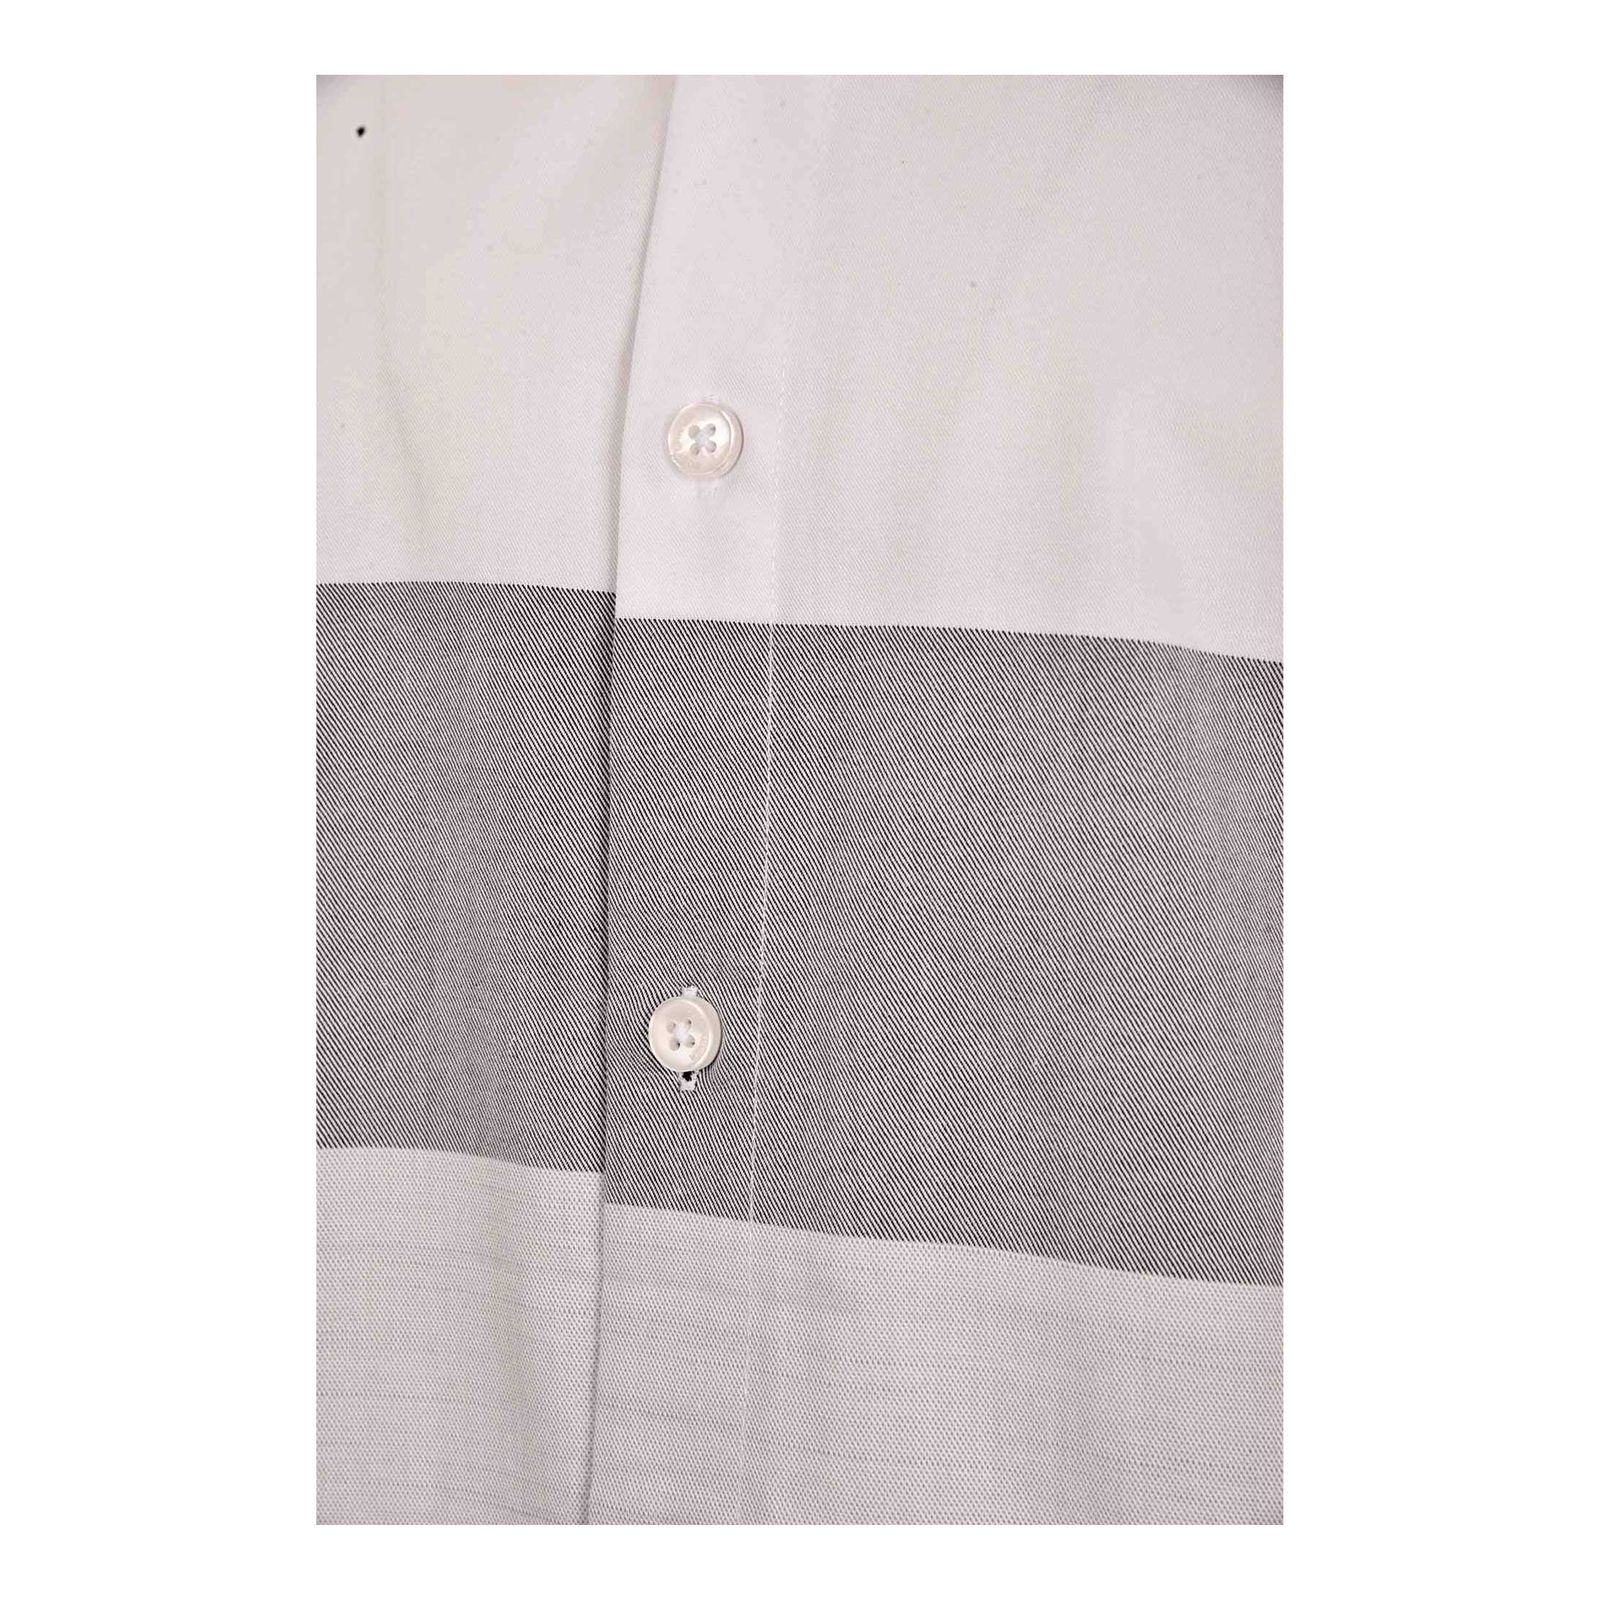 پیراهن آستین بلند مردانه بادی اسپینر مدل 3996 کد 1 رنگ سفید -  - 4